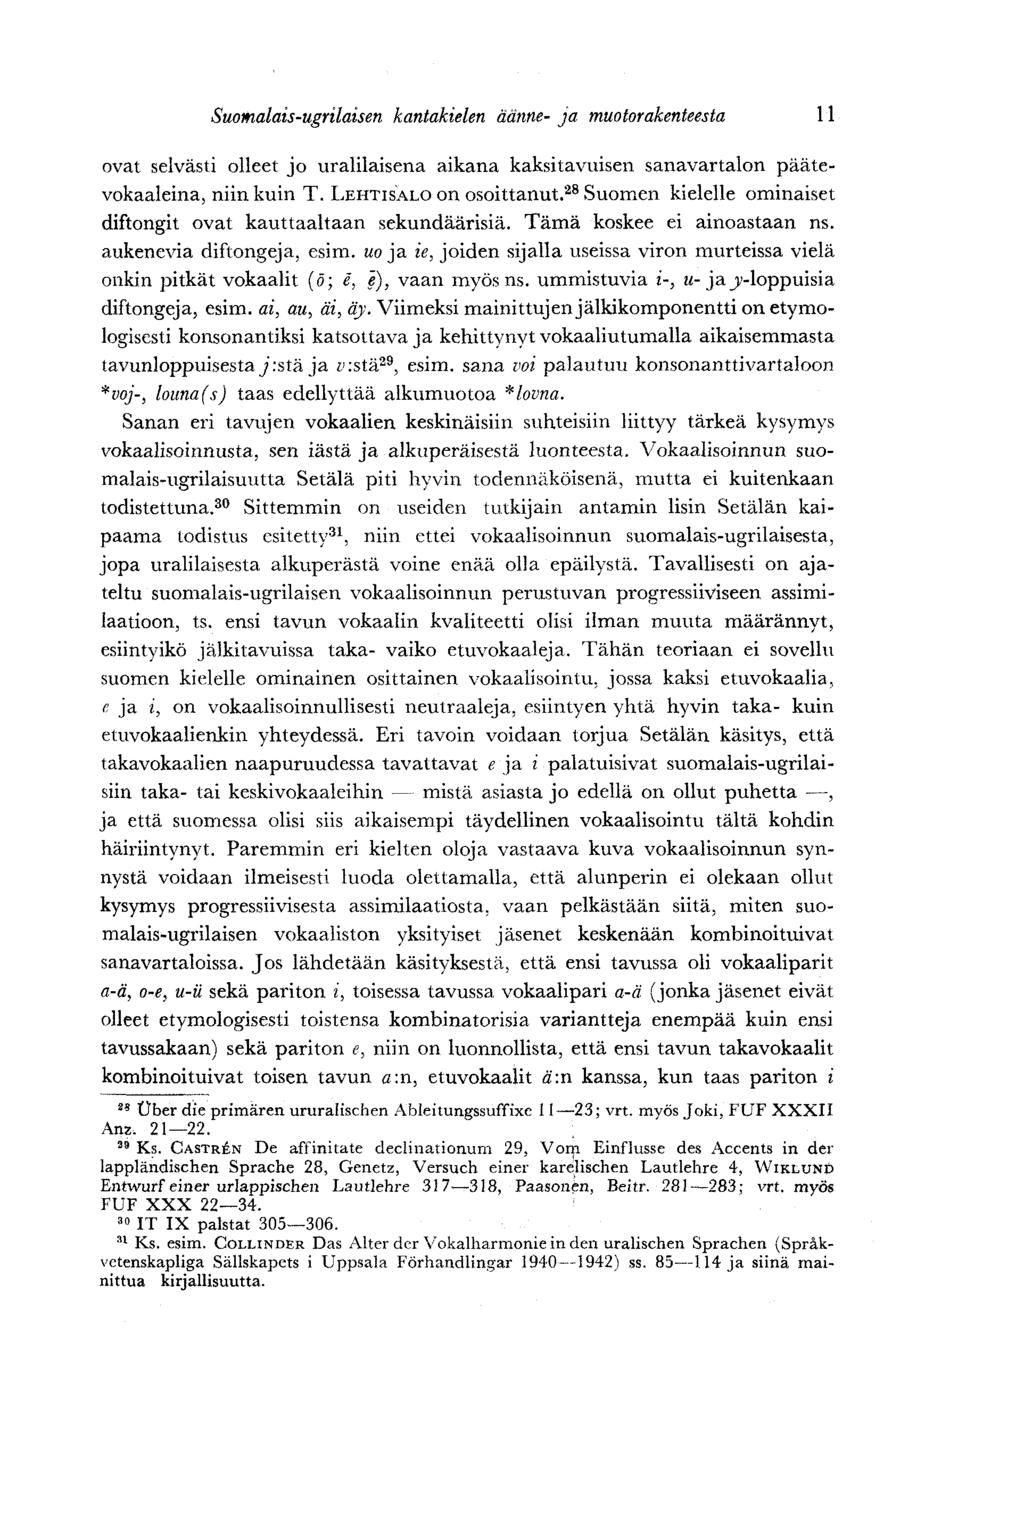 Suomalais-ugrilaisen kantakielen äänne- ja muotorakenteesta 11 ovat selvästi olleet jo uralilaisena aikana kaksitavuisen sanavartalon päätevokaaleina, niin kuin T. LEHTISALO on osoittanut.